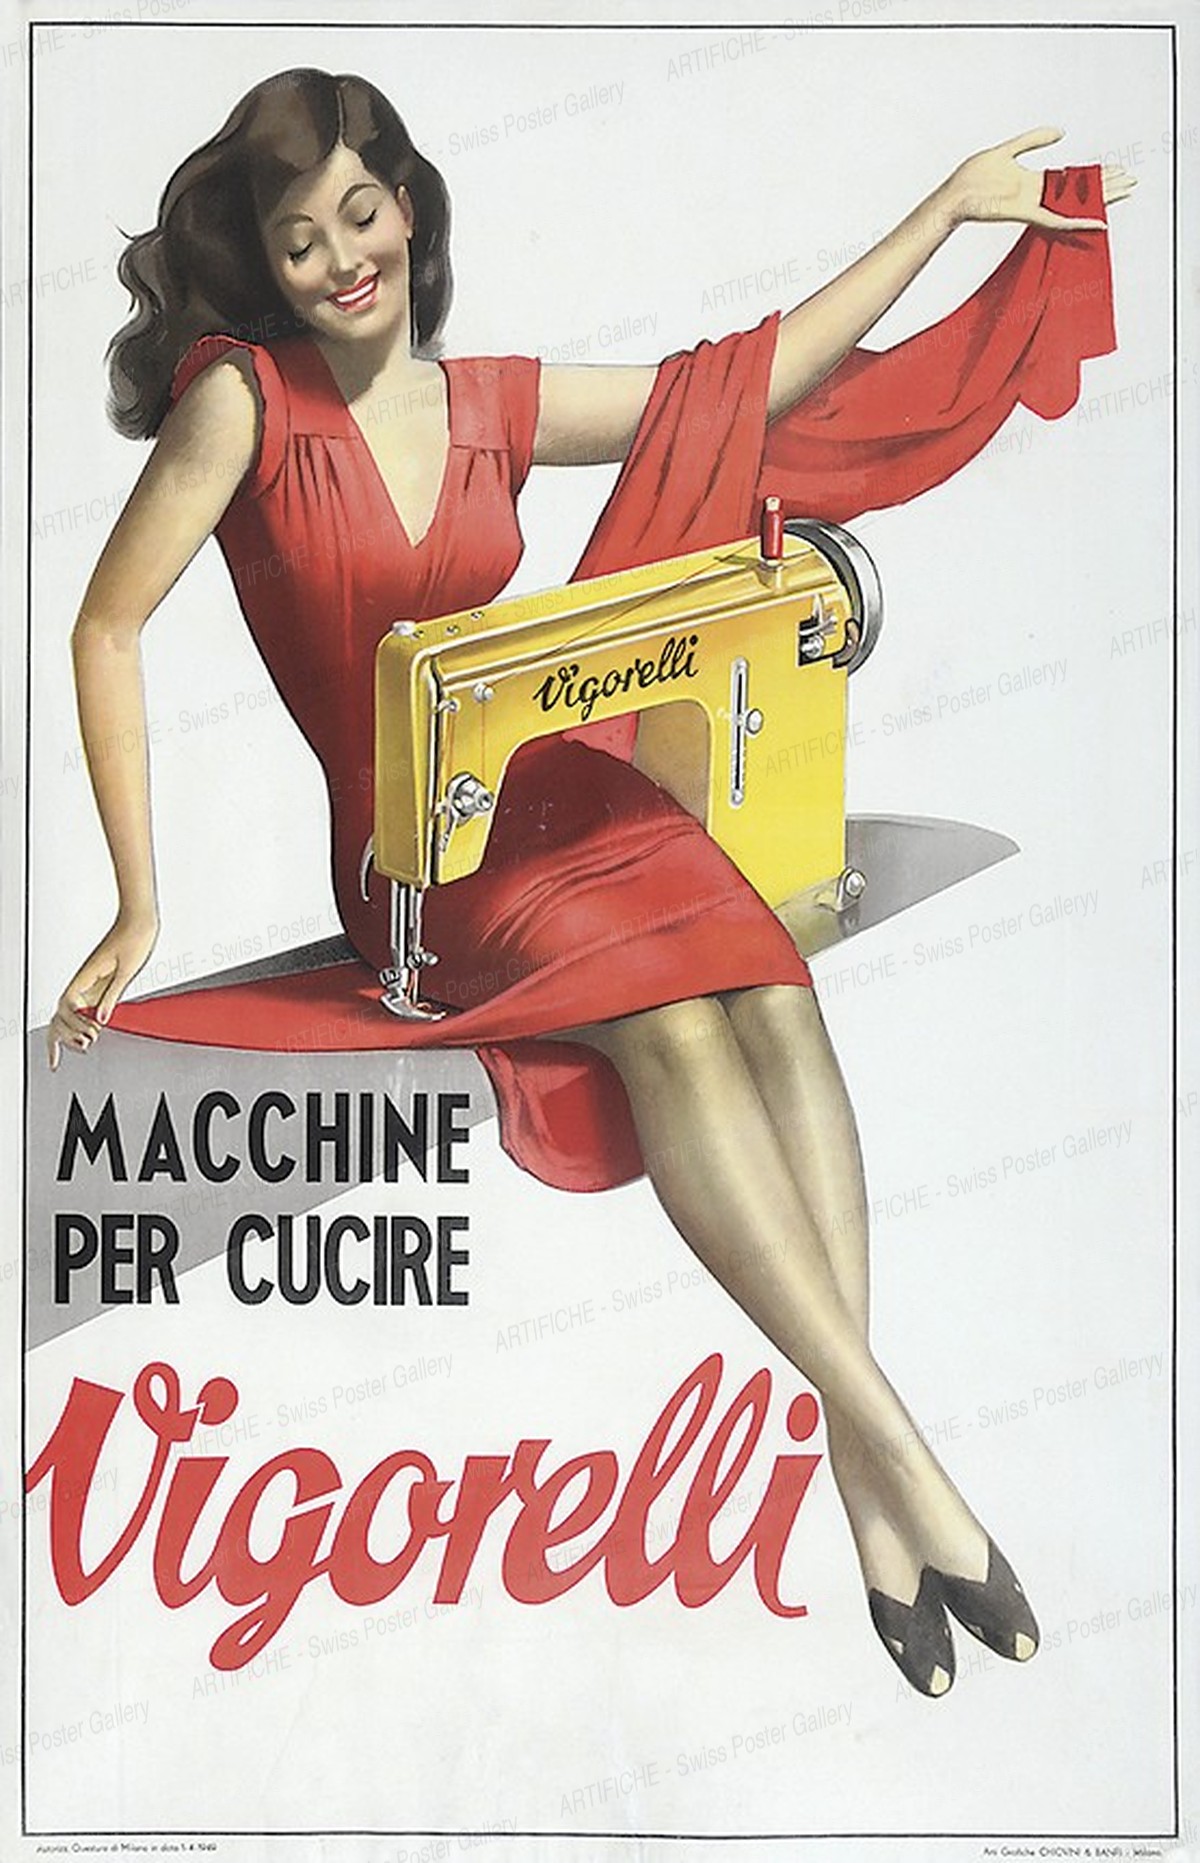 Vigorelli – Macchine per cucire, Gino Boccasile